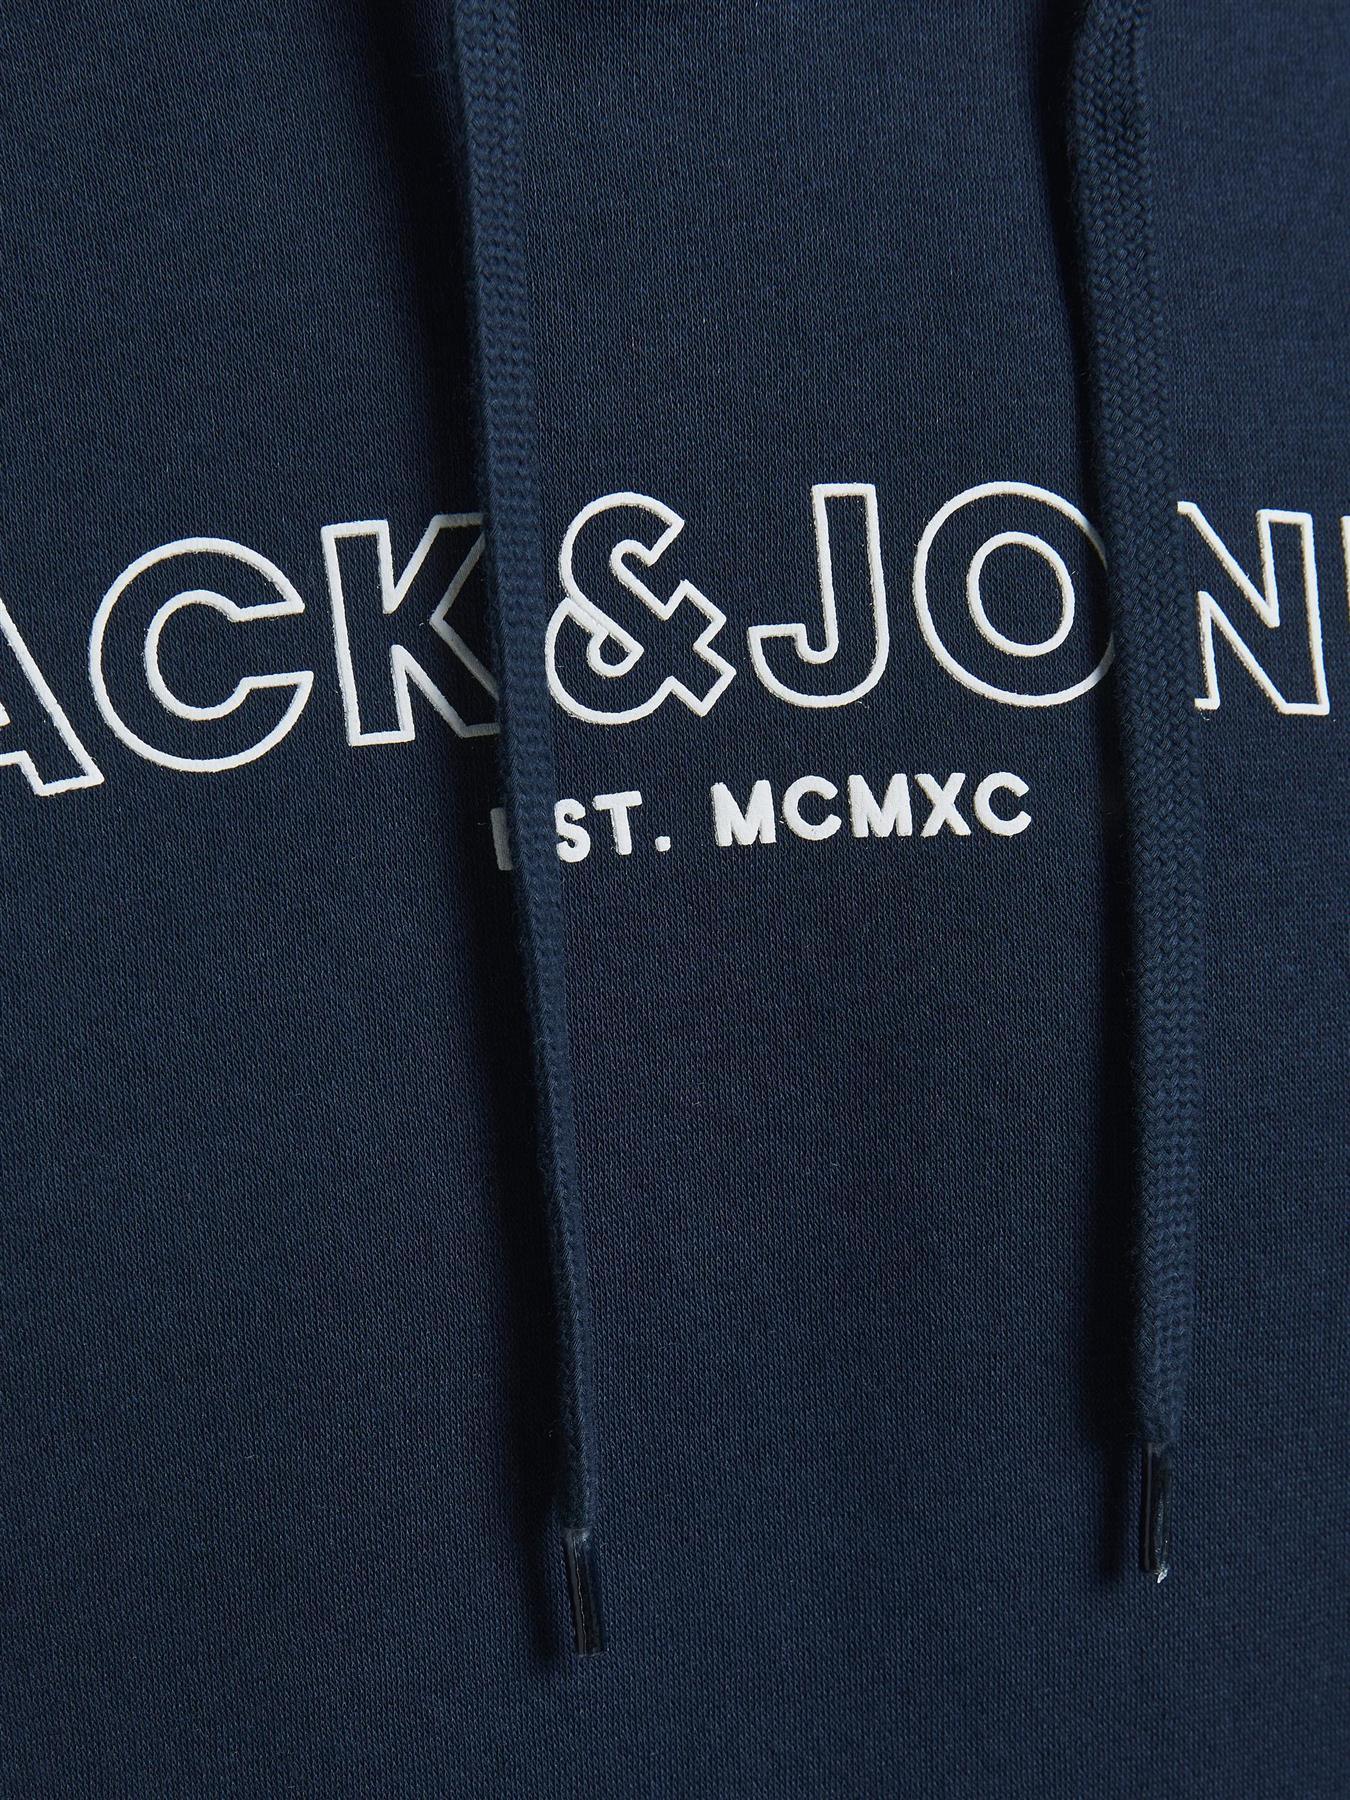 Jack & Jones Mens 'Bank' Hoody in Navy - VR2 Clothing